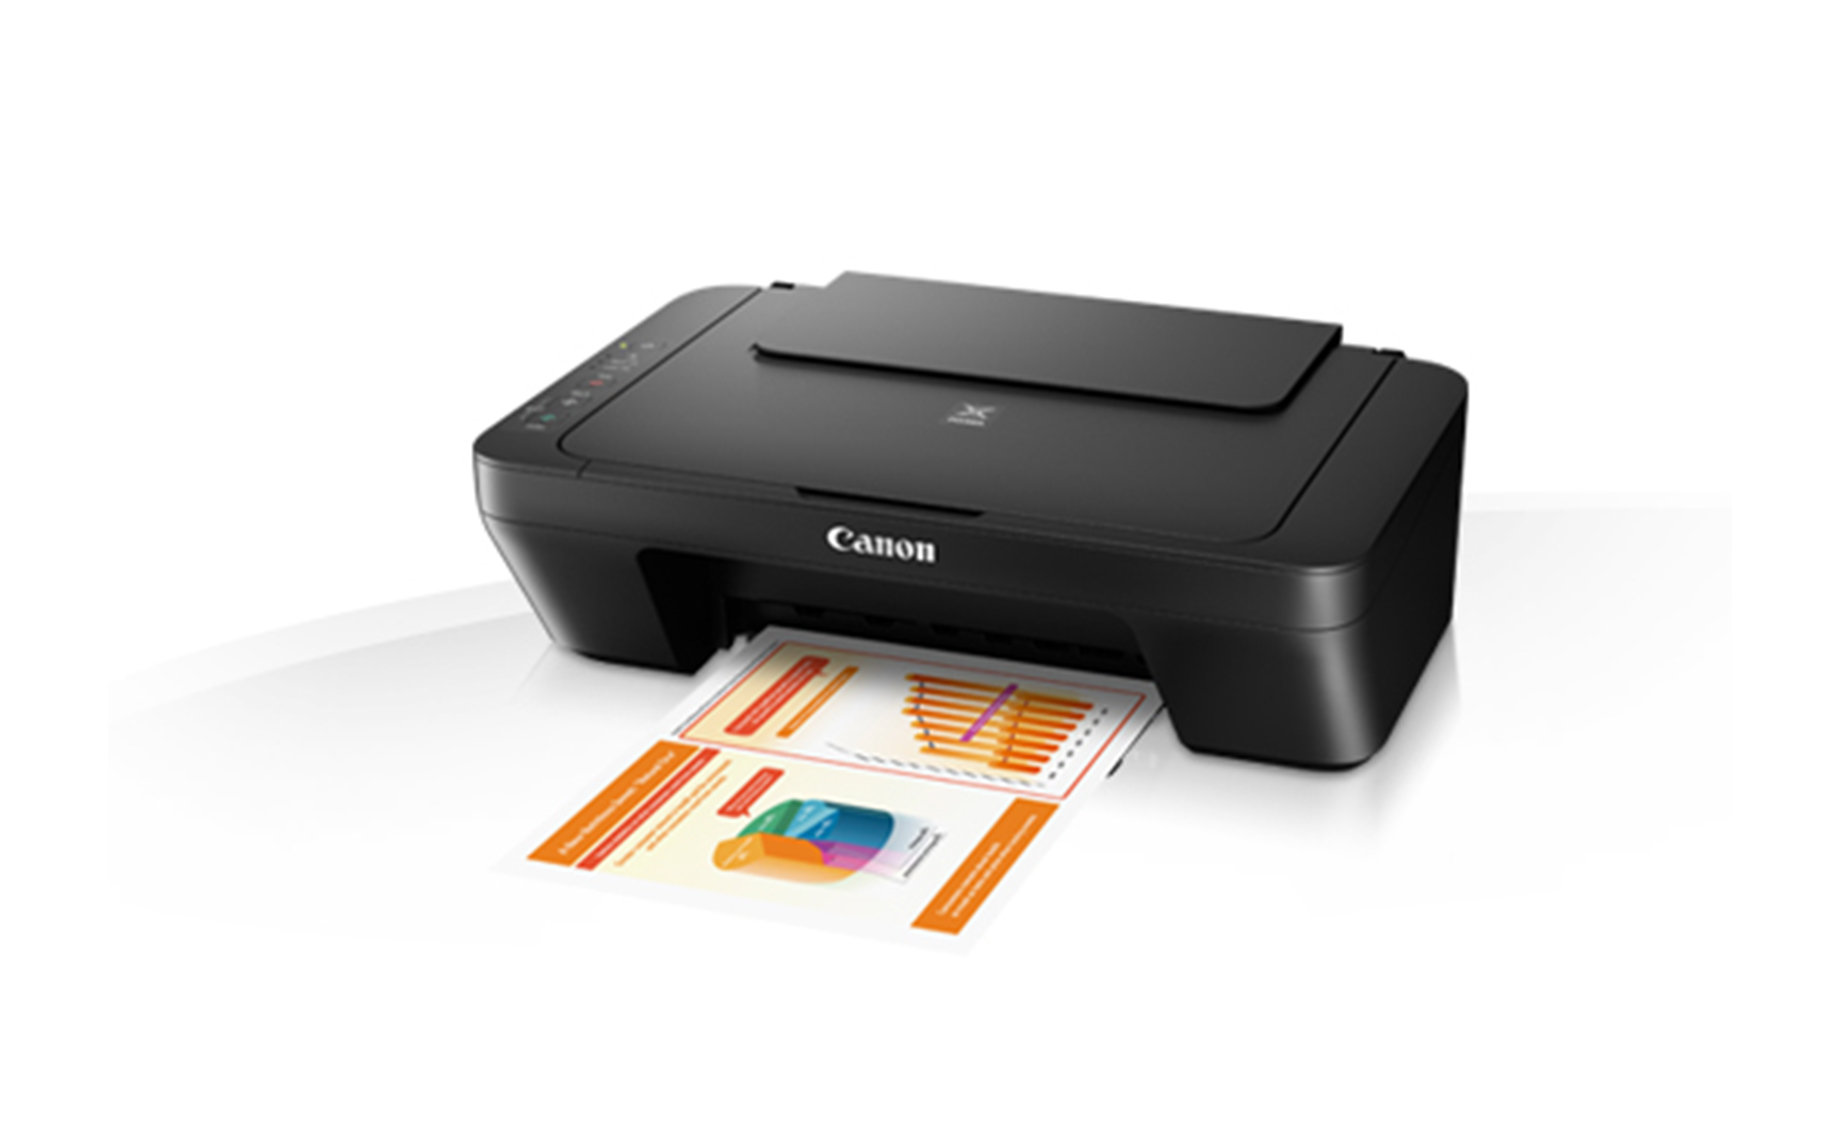 Canon MG2550S printer/scaner/copy